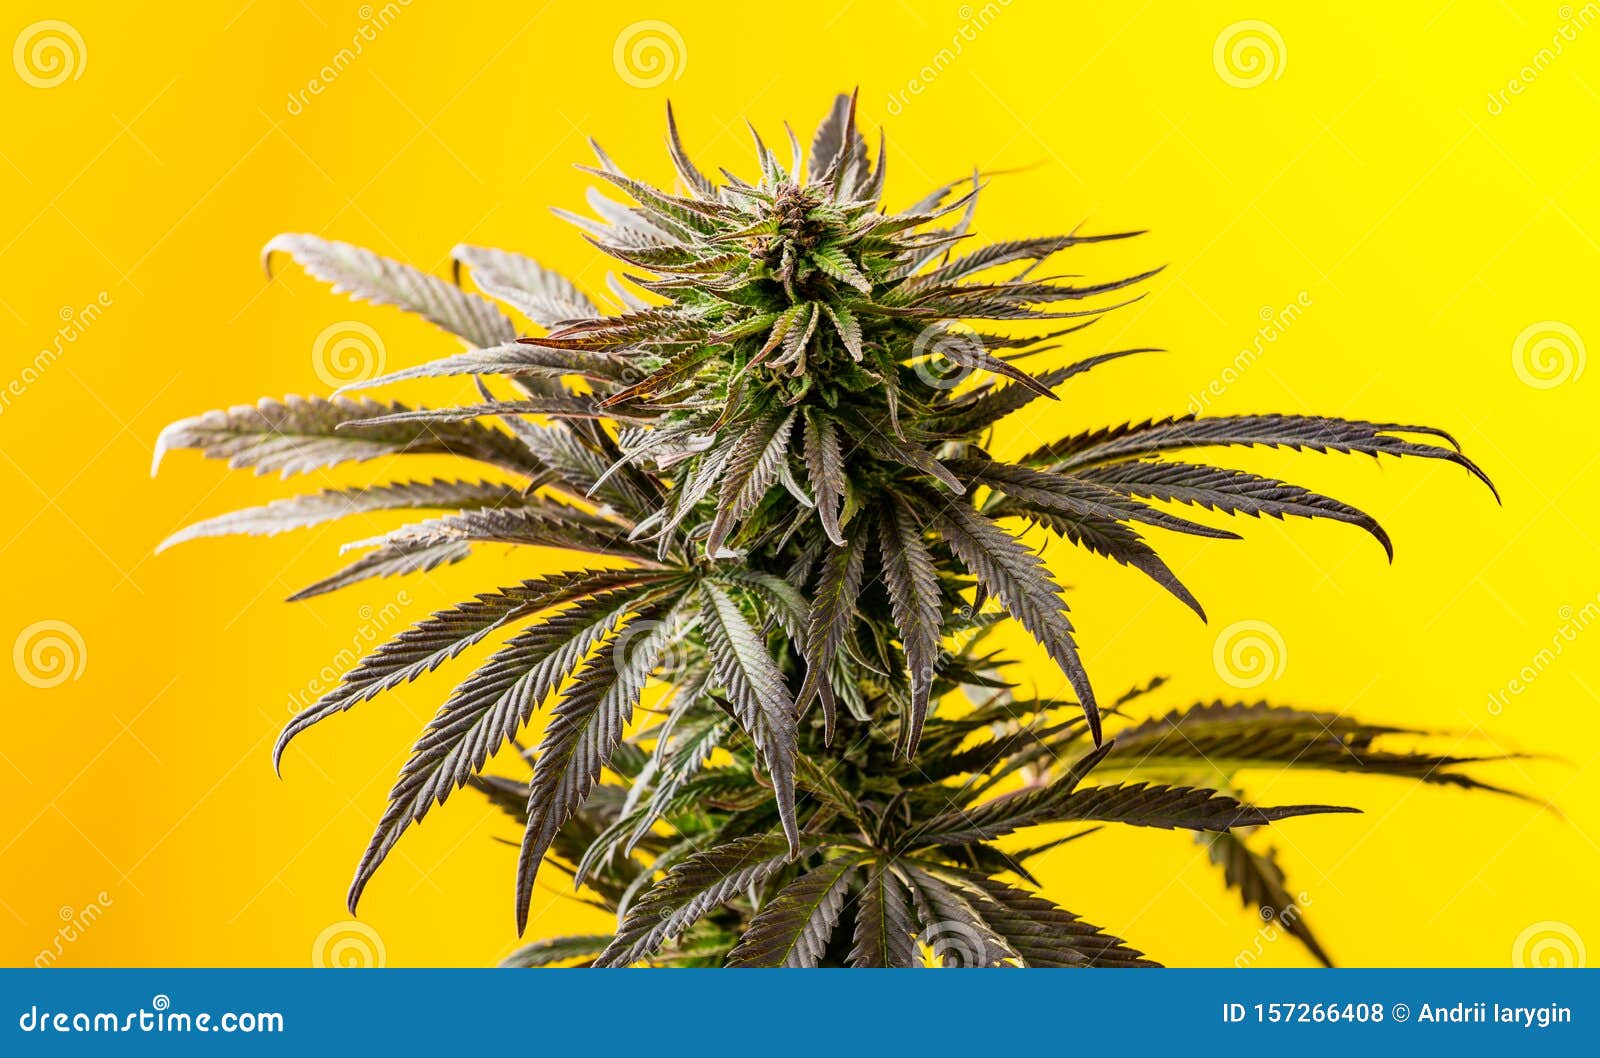 100,000+张最精彩的“大麻”图片 · 100%免费下载 · Pexels素材图片